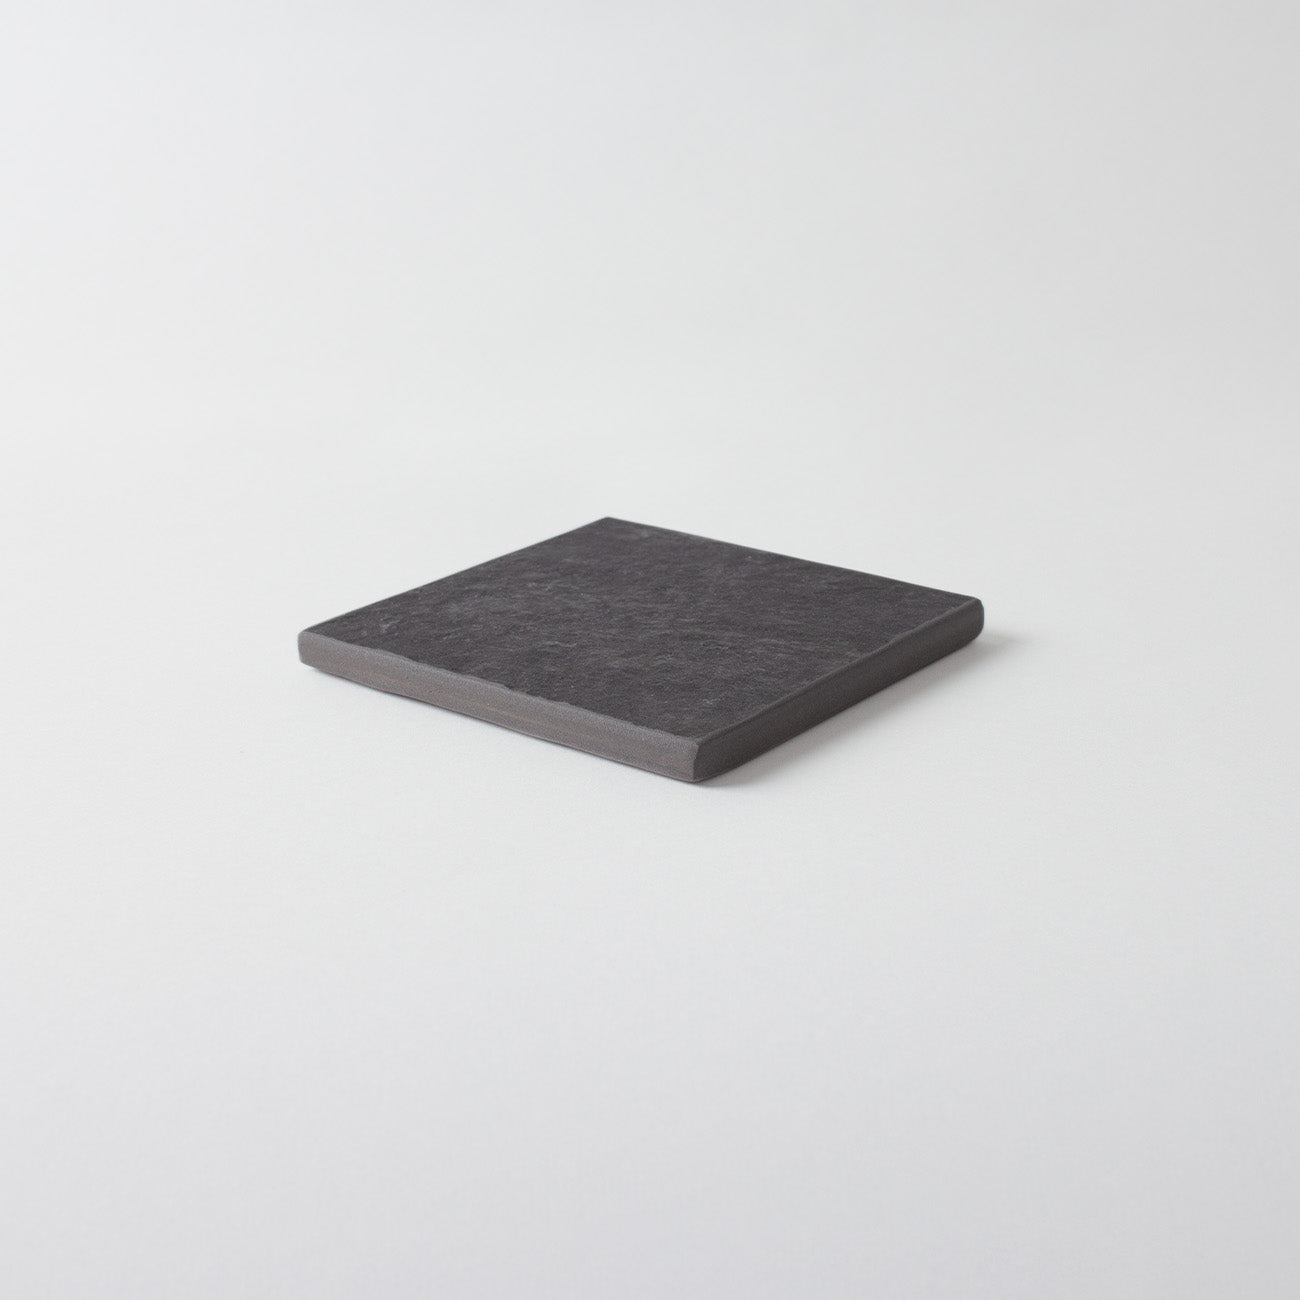 【復興支援商品】正方形10cm角 ペアセット ブラック